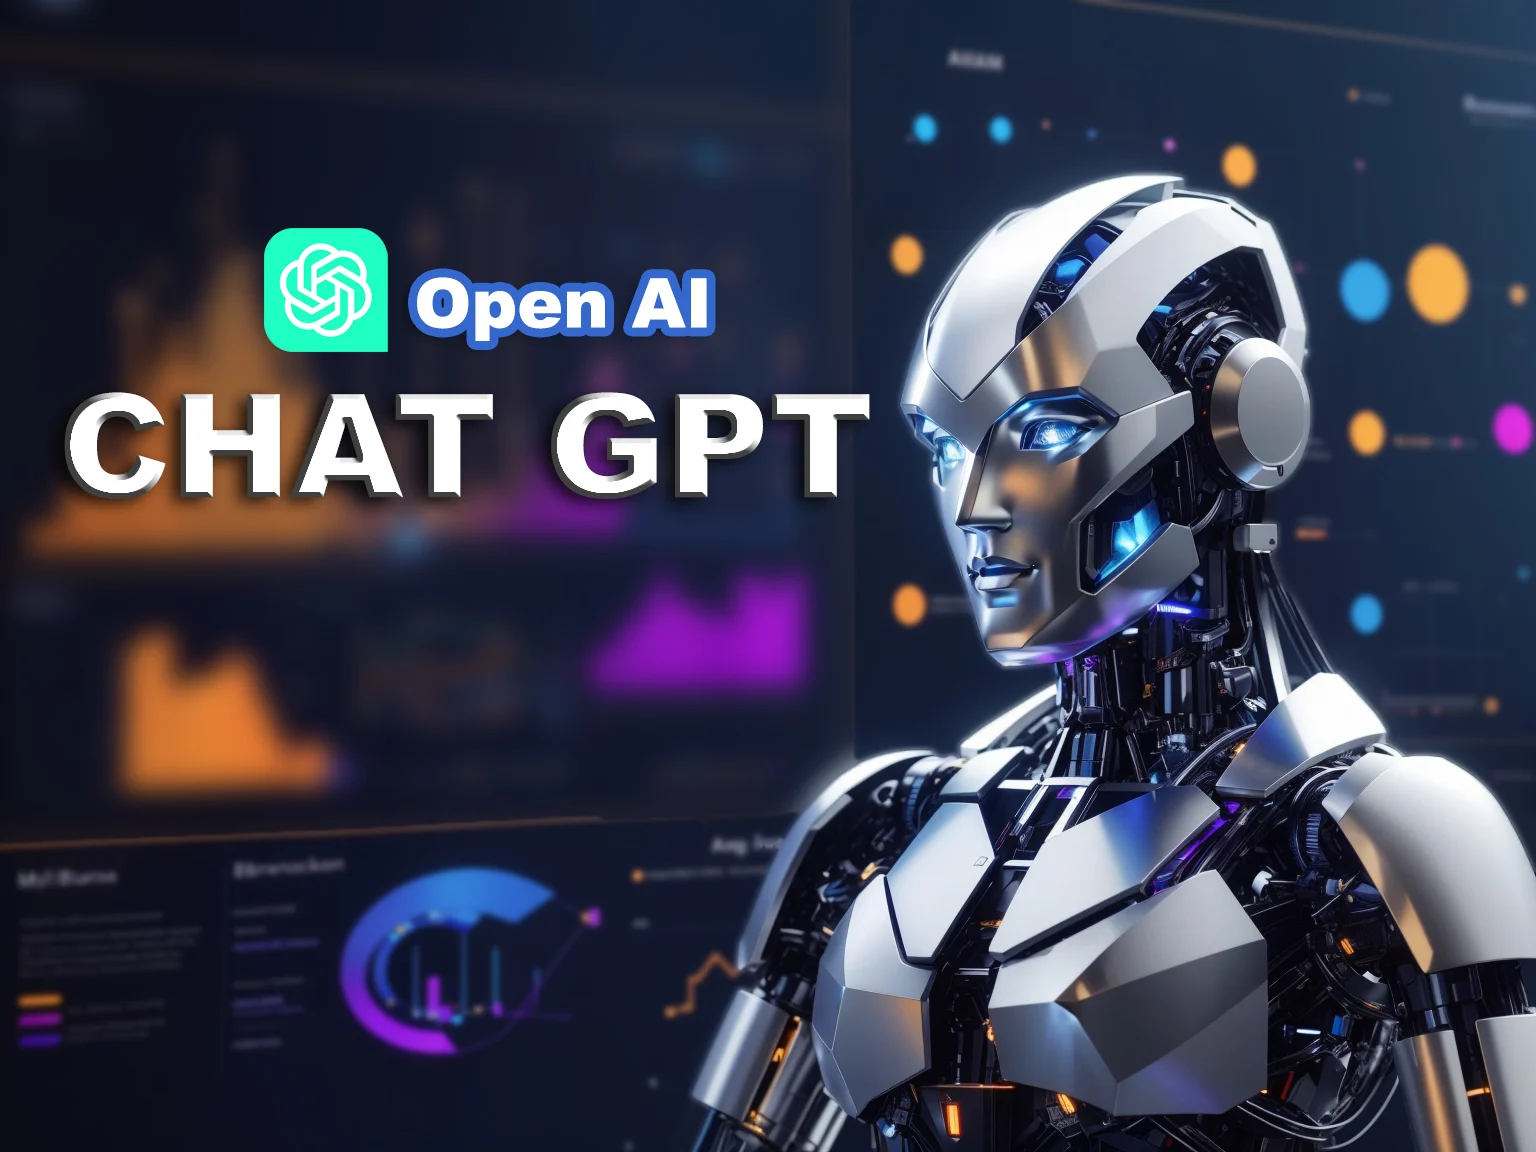 图片展示了一个具有现代科技感的机器人头部侧面像，背景是带有OpenAI和Chat GPT字样的虚拟界面。